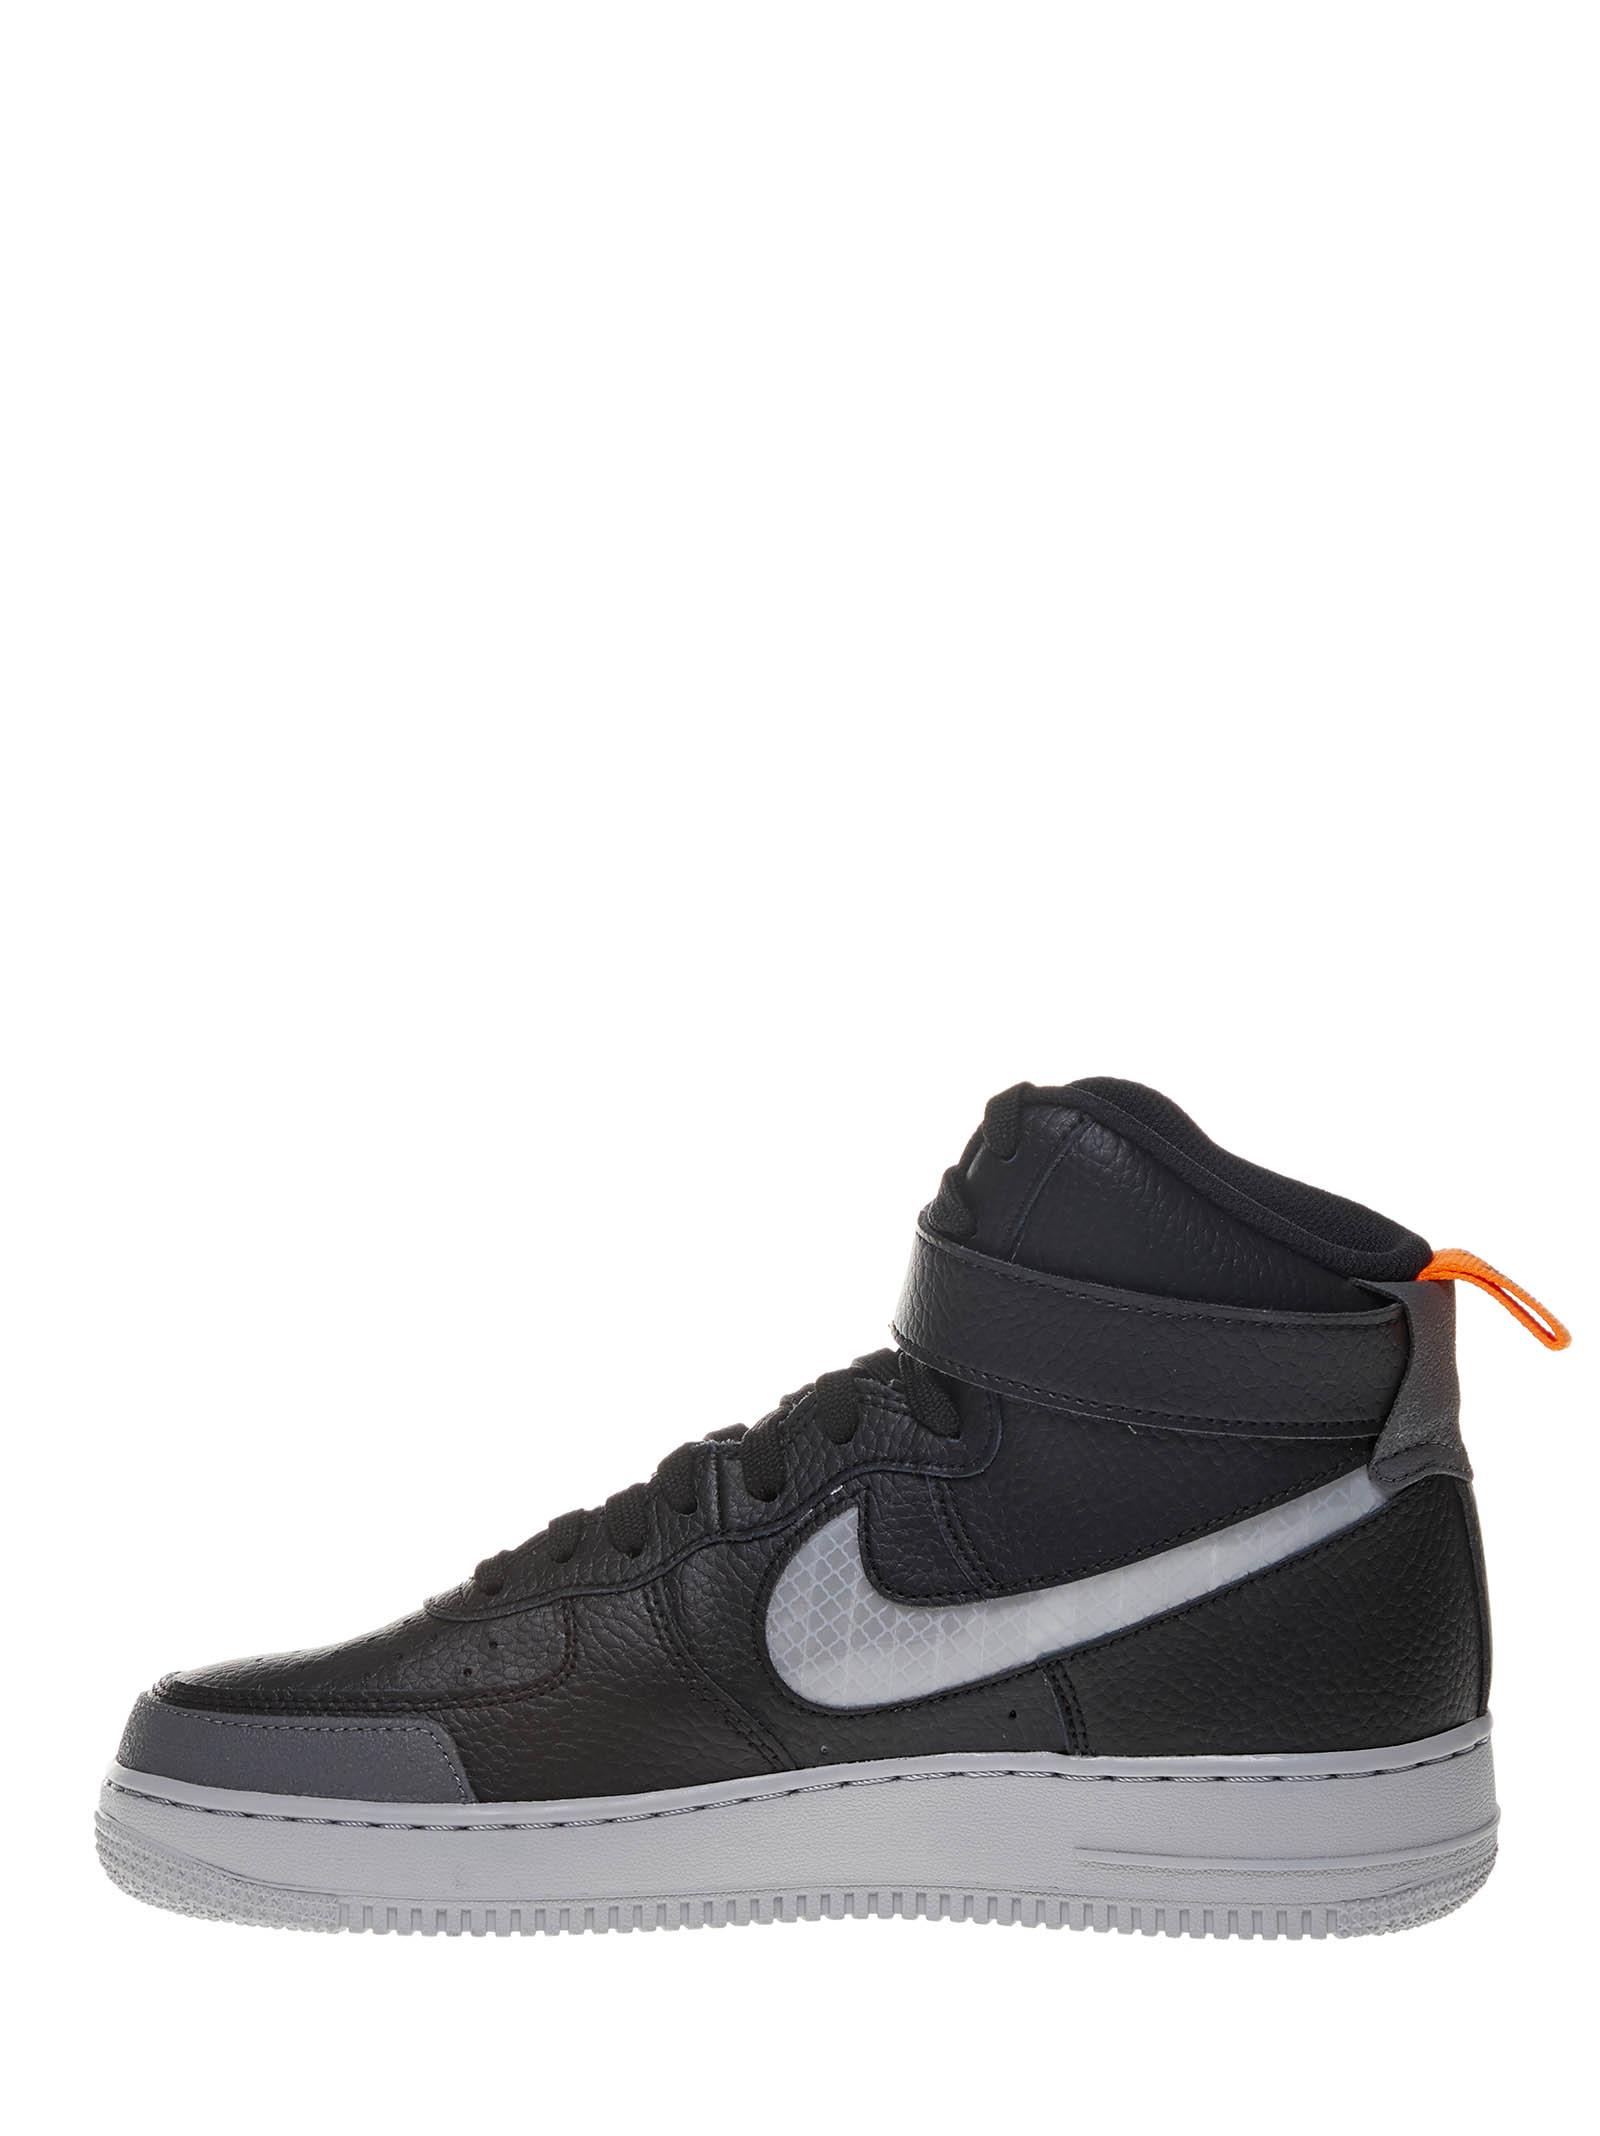 Sneakers nere alte Air Force 1 '07 LV8 con swoosh riflettenti e dettagli  grigi.Nike in Pelle da Uomo colore Nero | Lyst